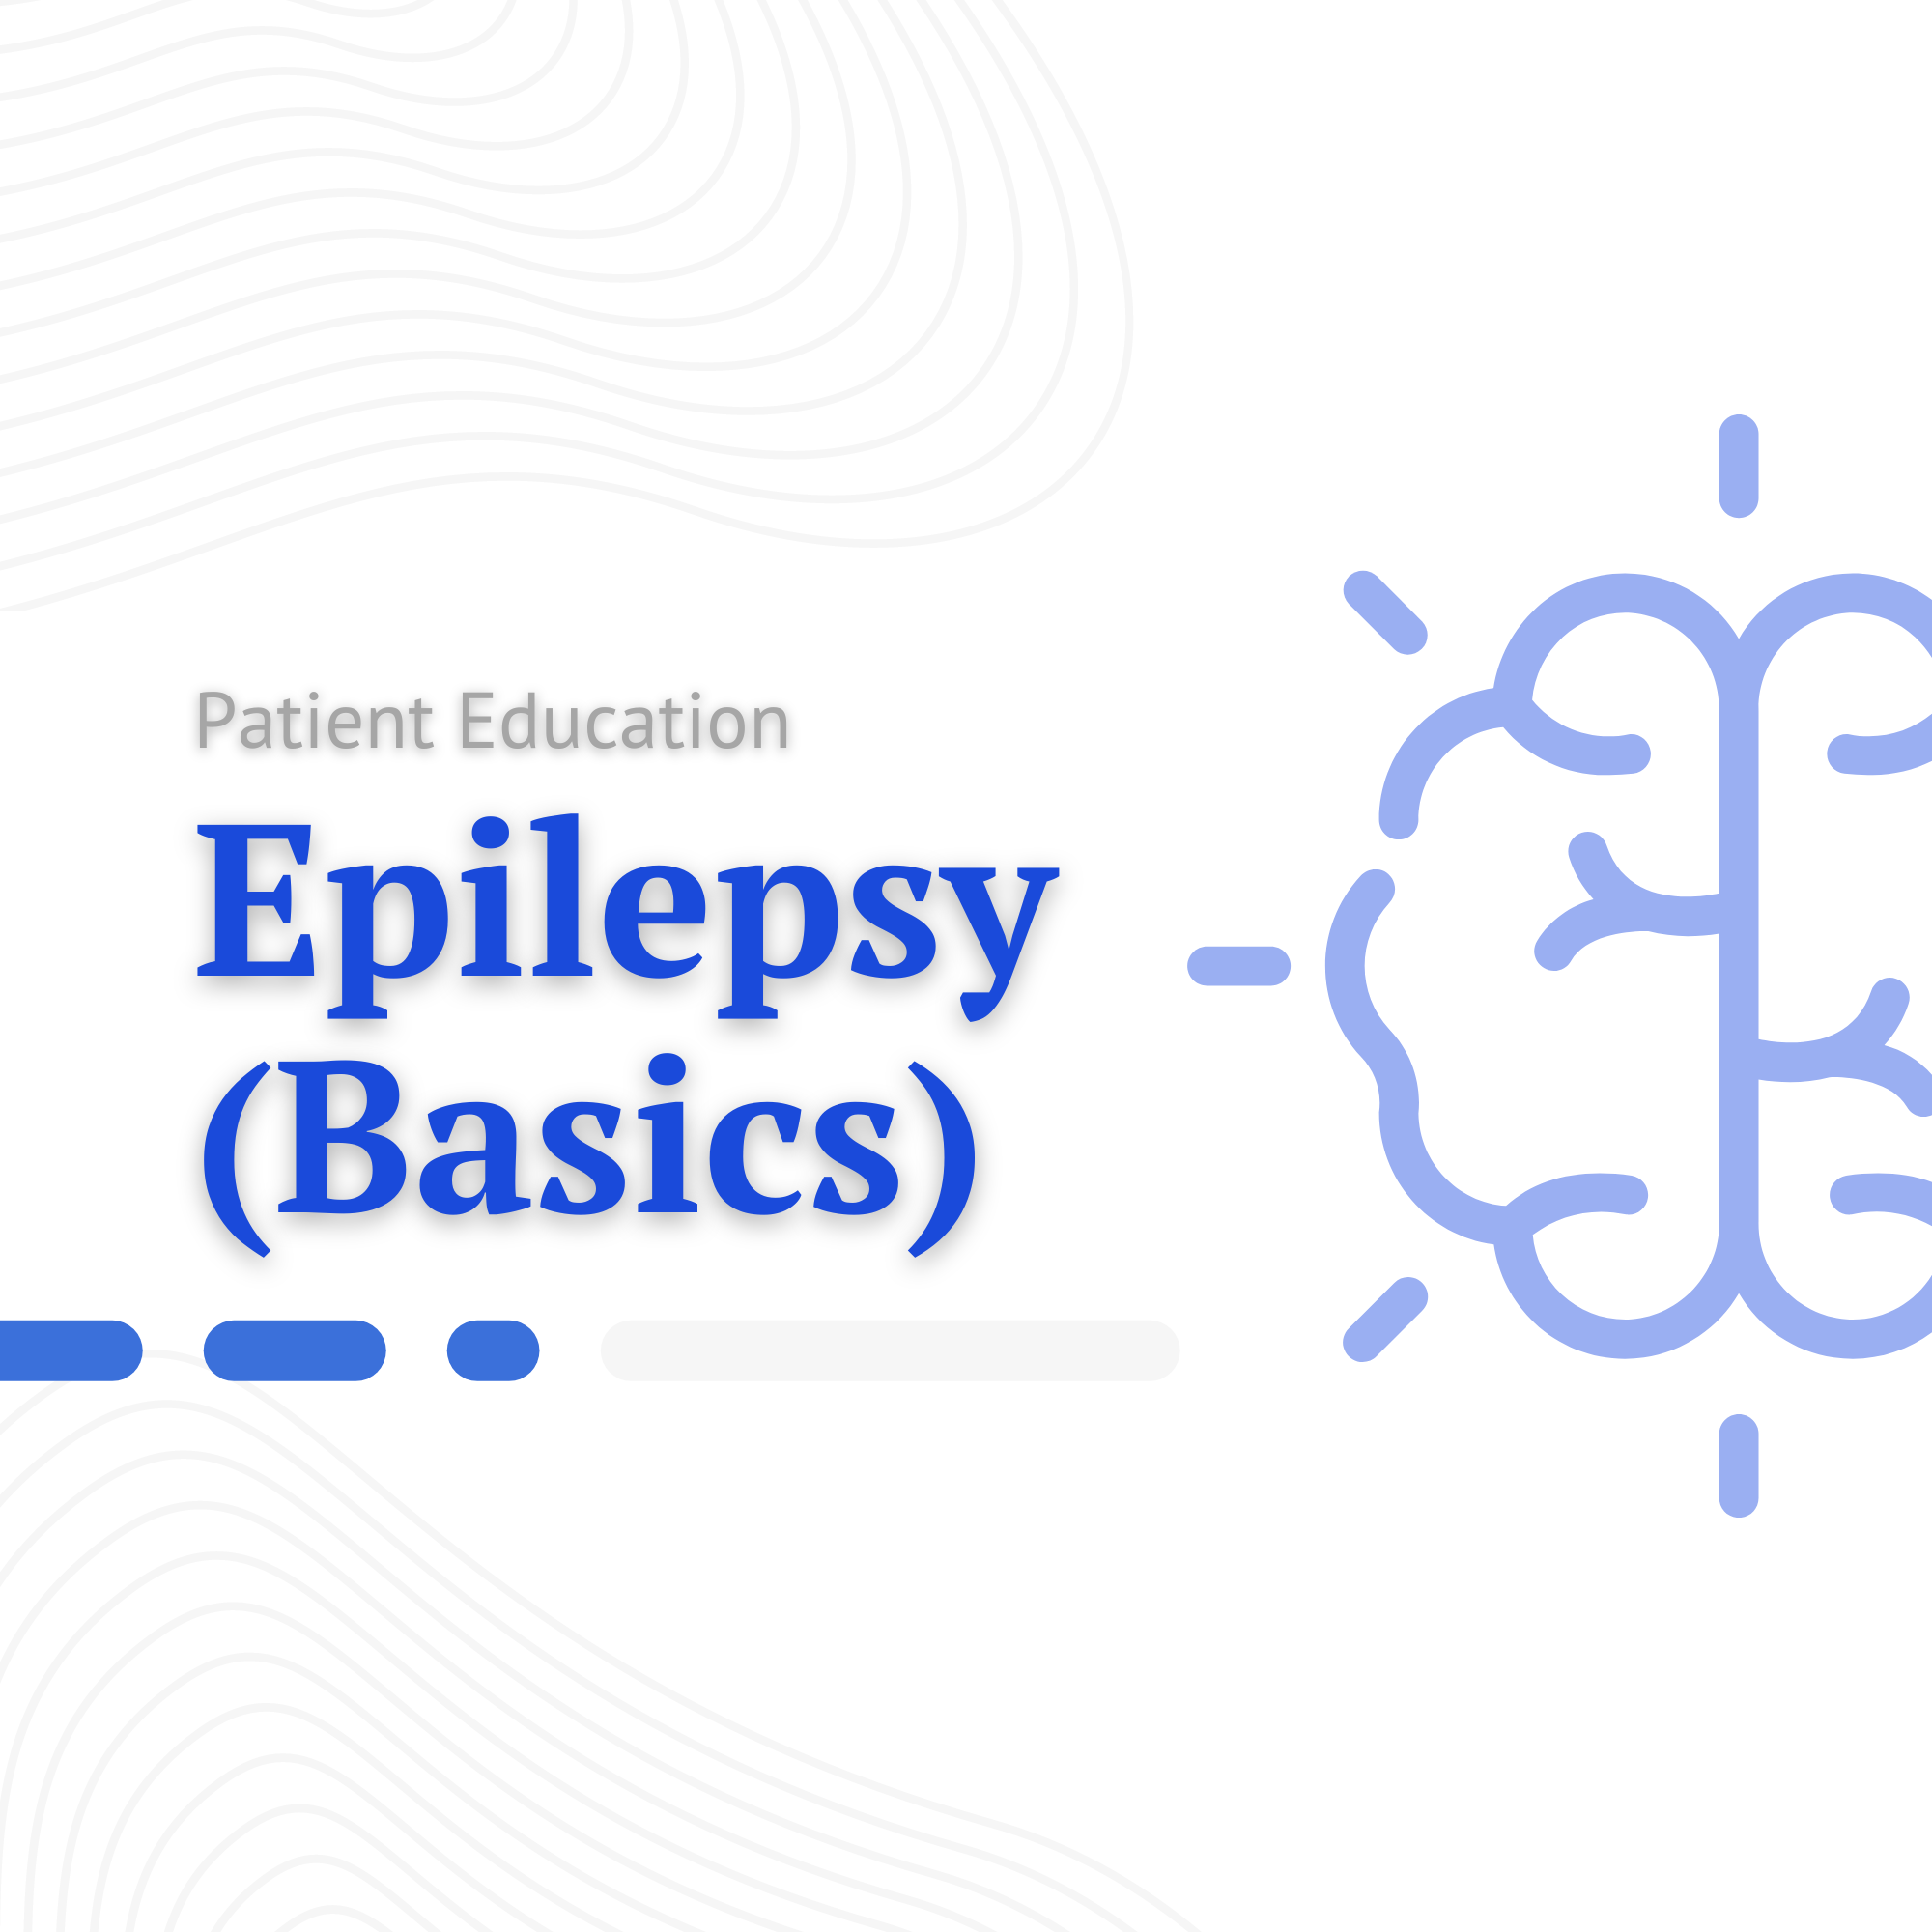 Epilepsy (Basics) Cover Photo.png